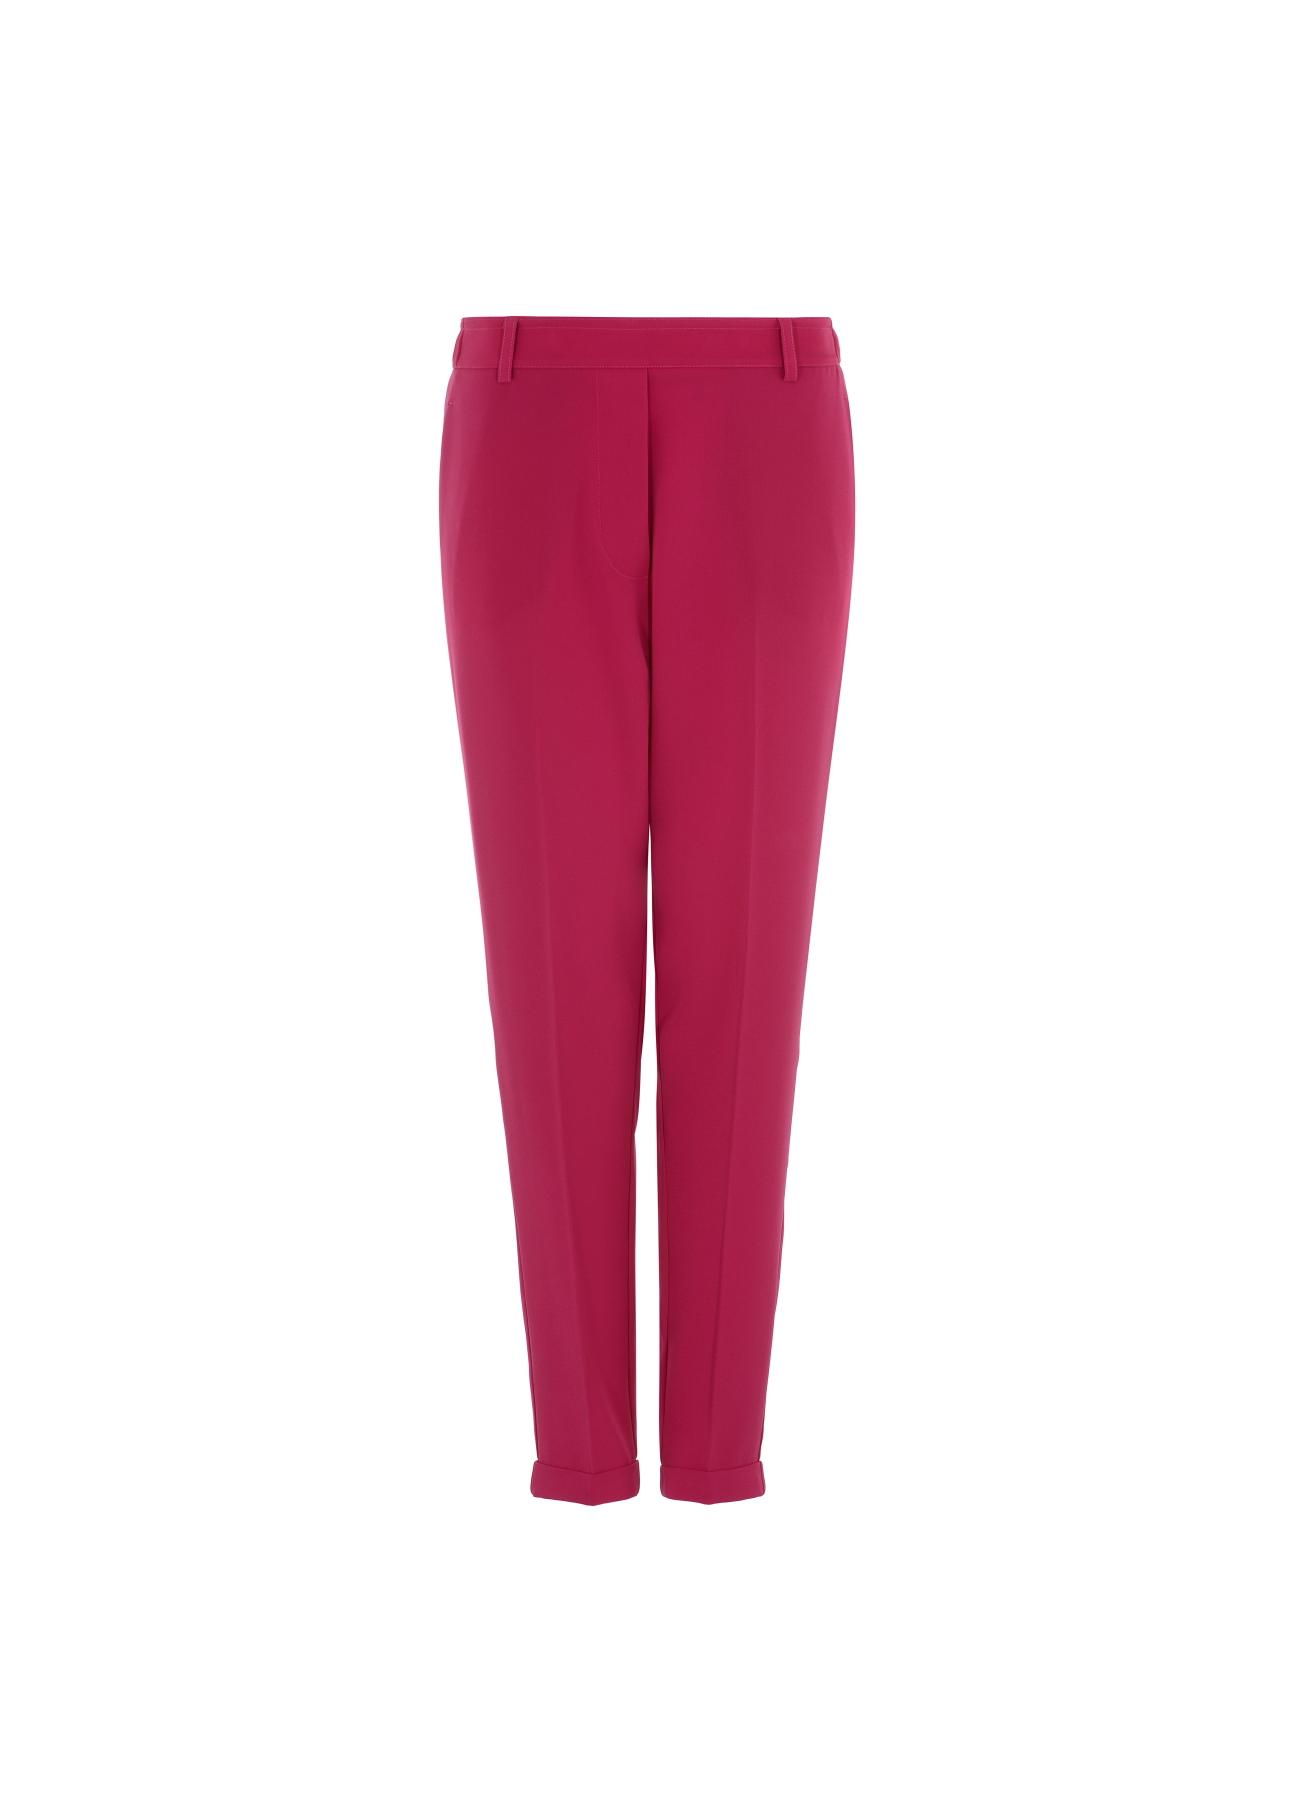 Eleganckie różowe spodnie damskie SPODT-0062-32(Z21)